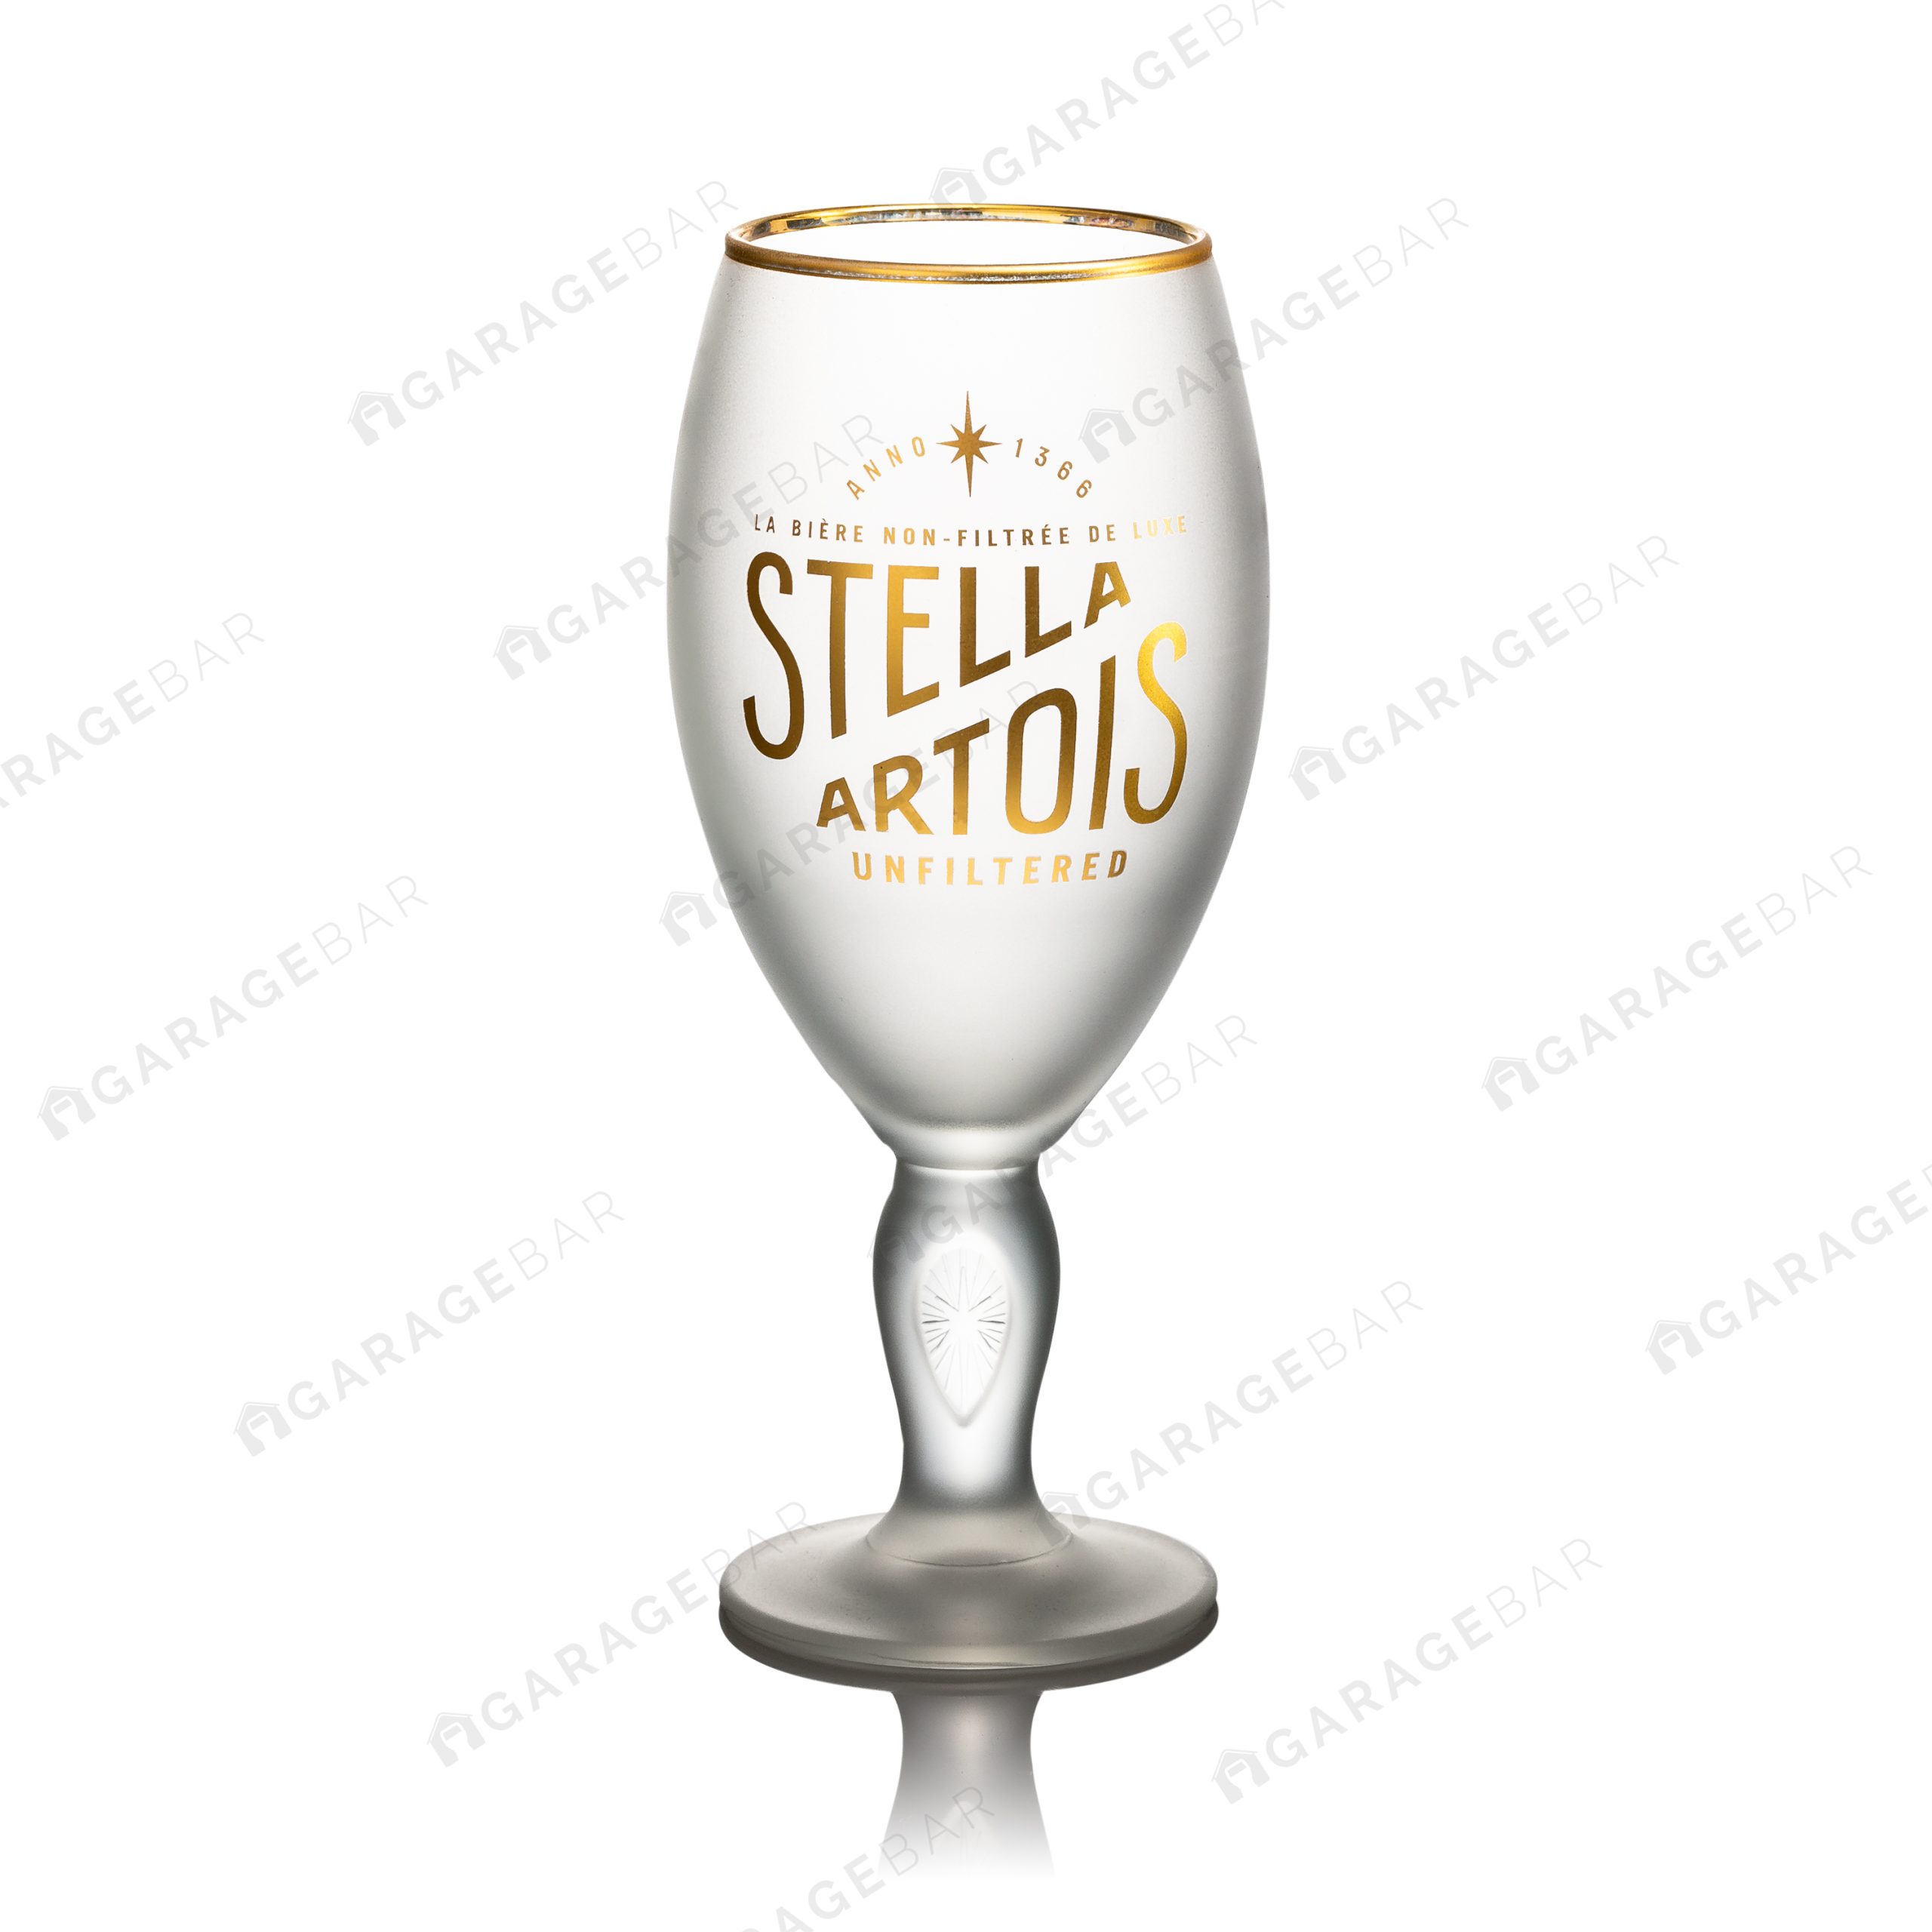 Stella Artois Unfiltered Beer Glass